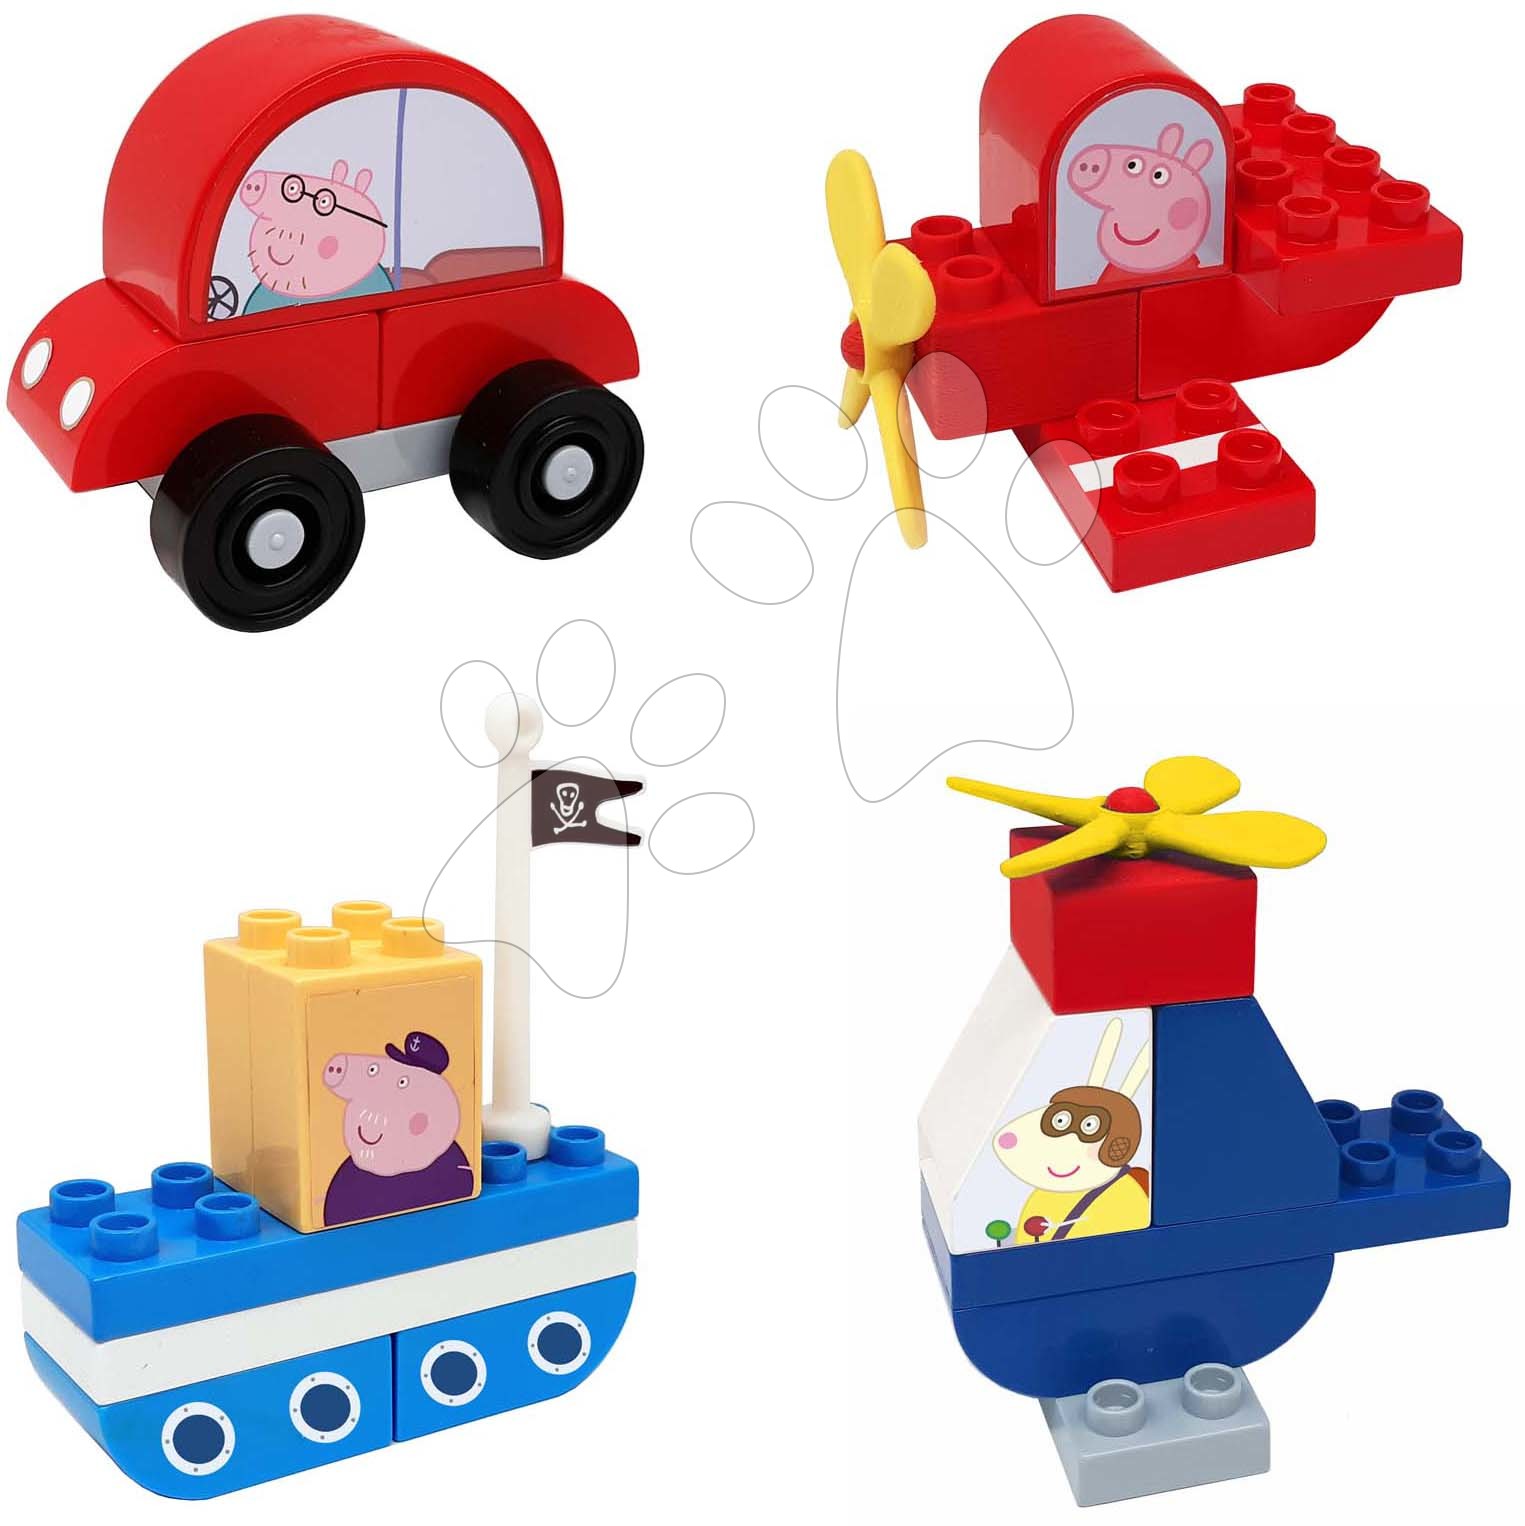 Építőjáték Peppa Pig Vehicles Set PlayBig Bloxx BIG szett 4 közlekedési eszköz 24 részes 1,5-5 évesnek